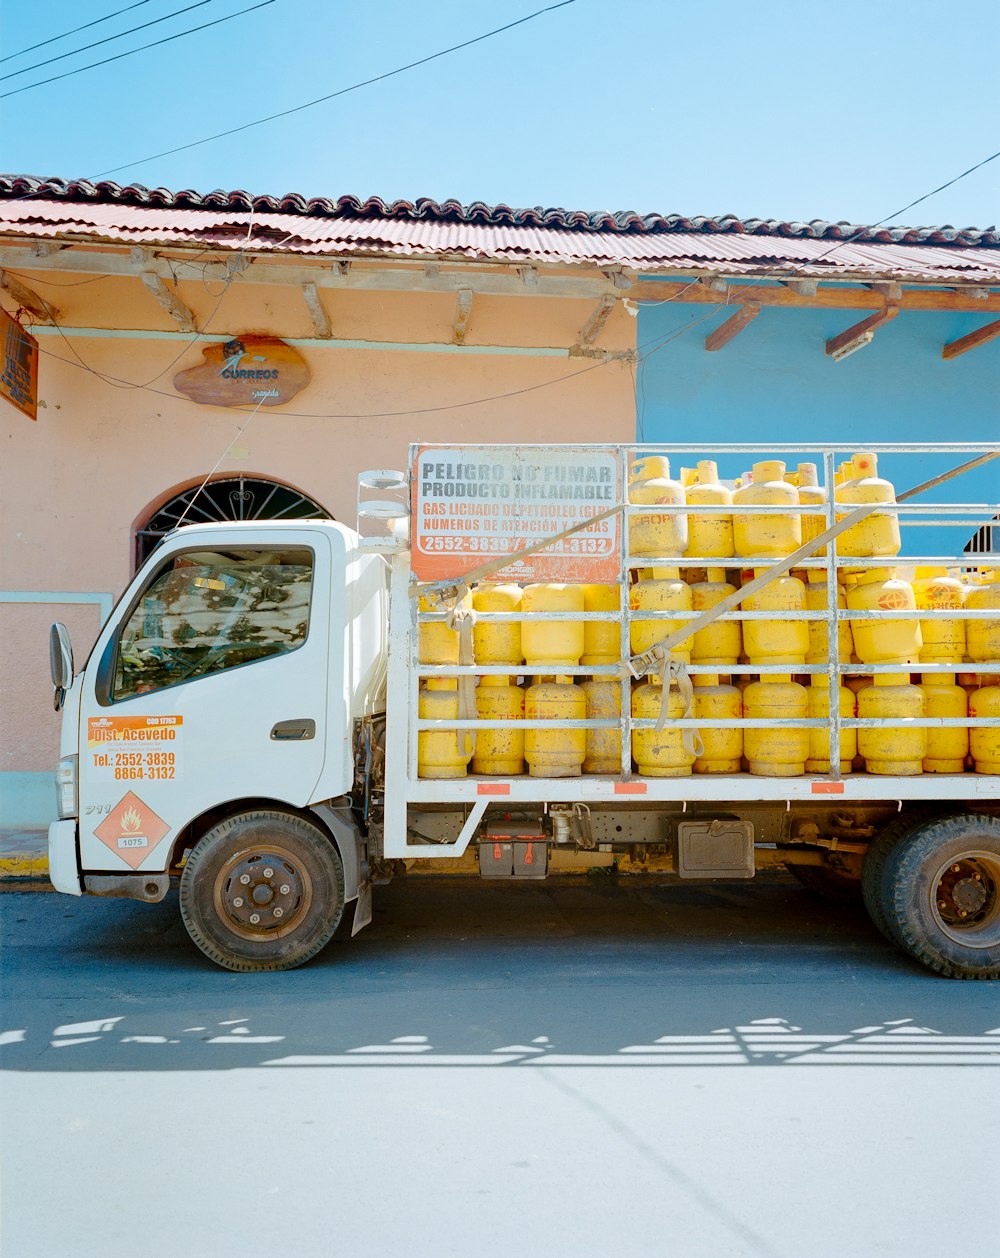 Foto zum Thema Ein LKW mit vielen gelben Containern auf der